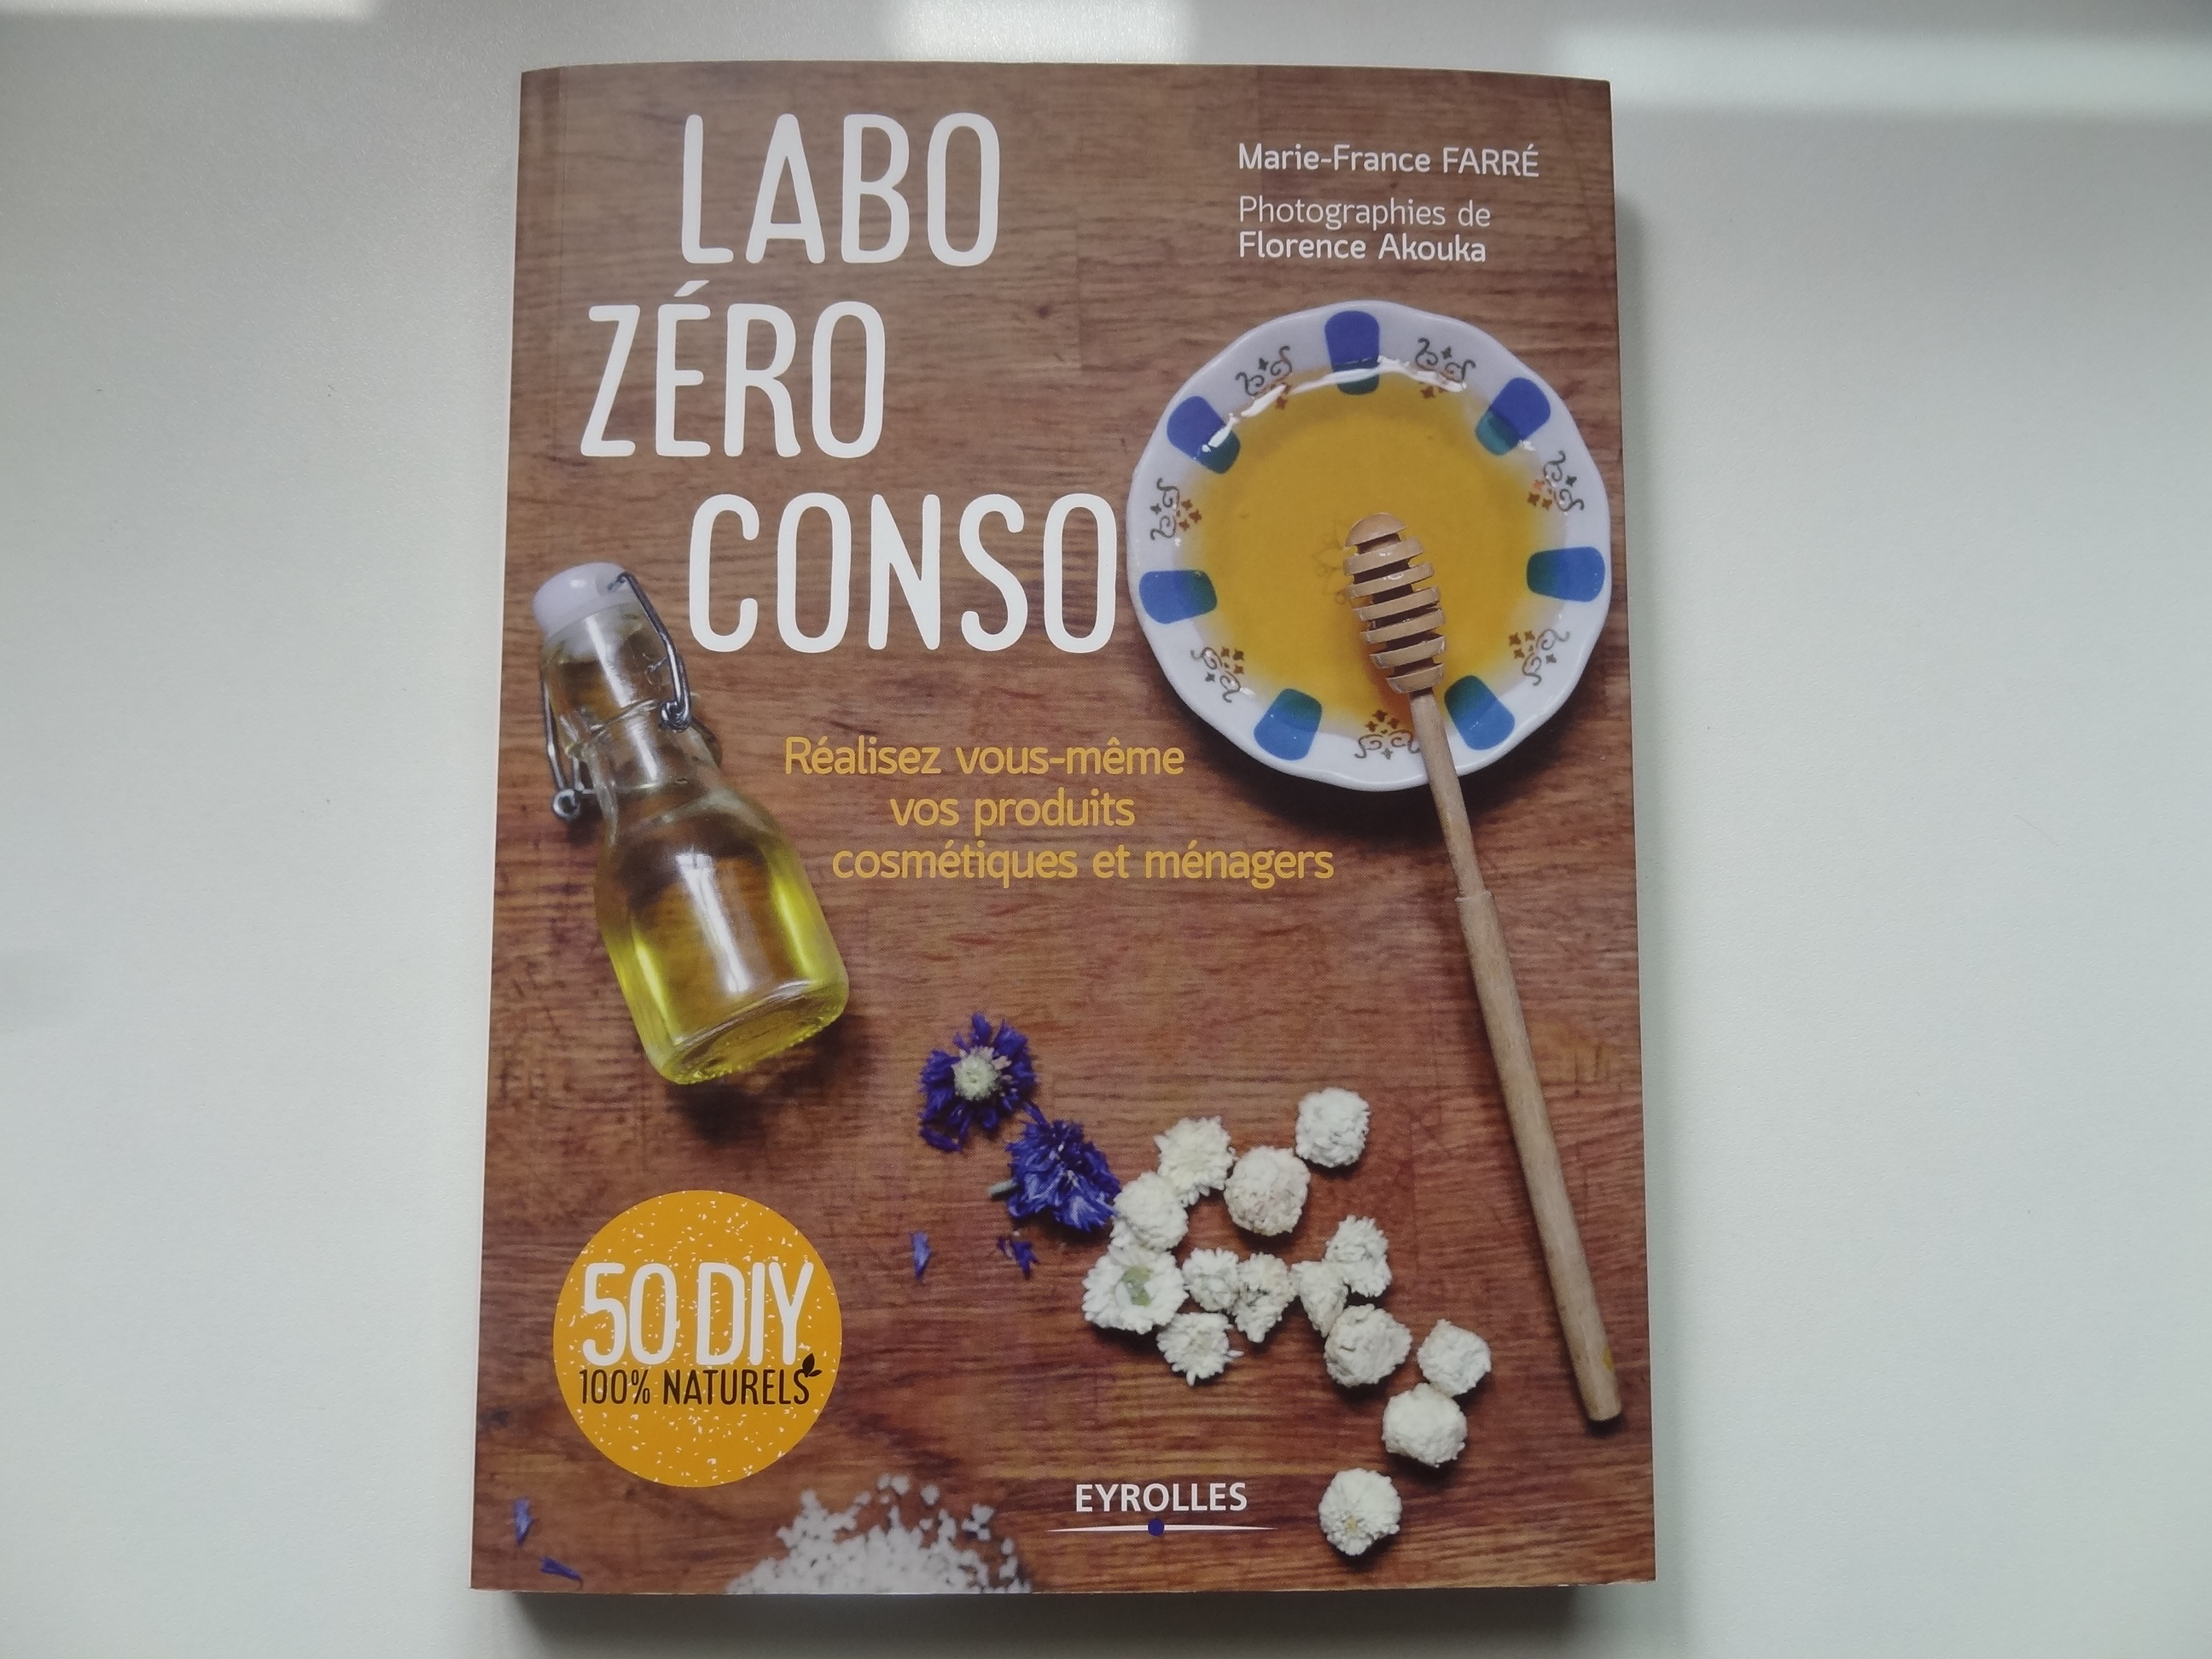 Labo Zéro Conso: fabriquez vos produits maison!